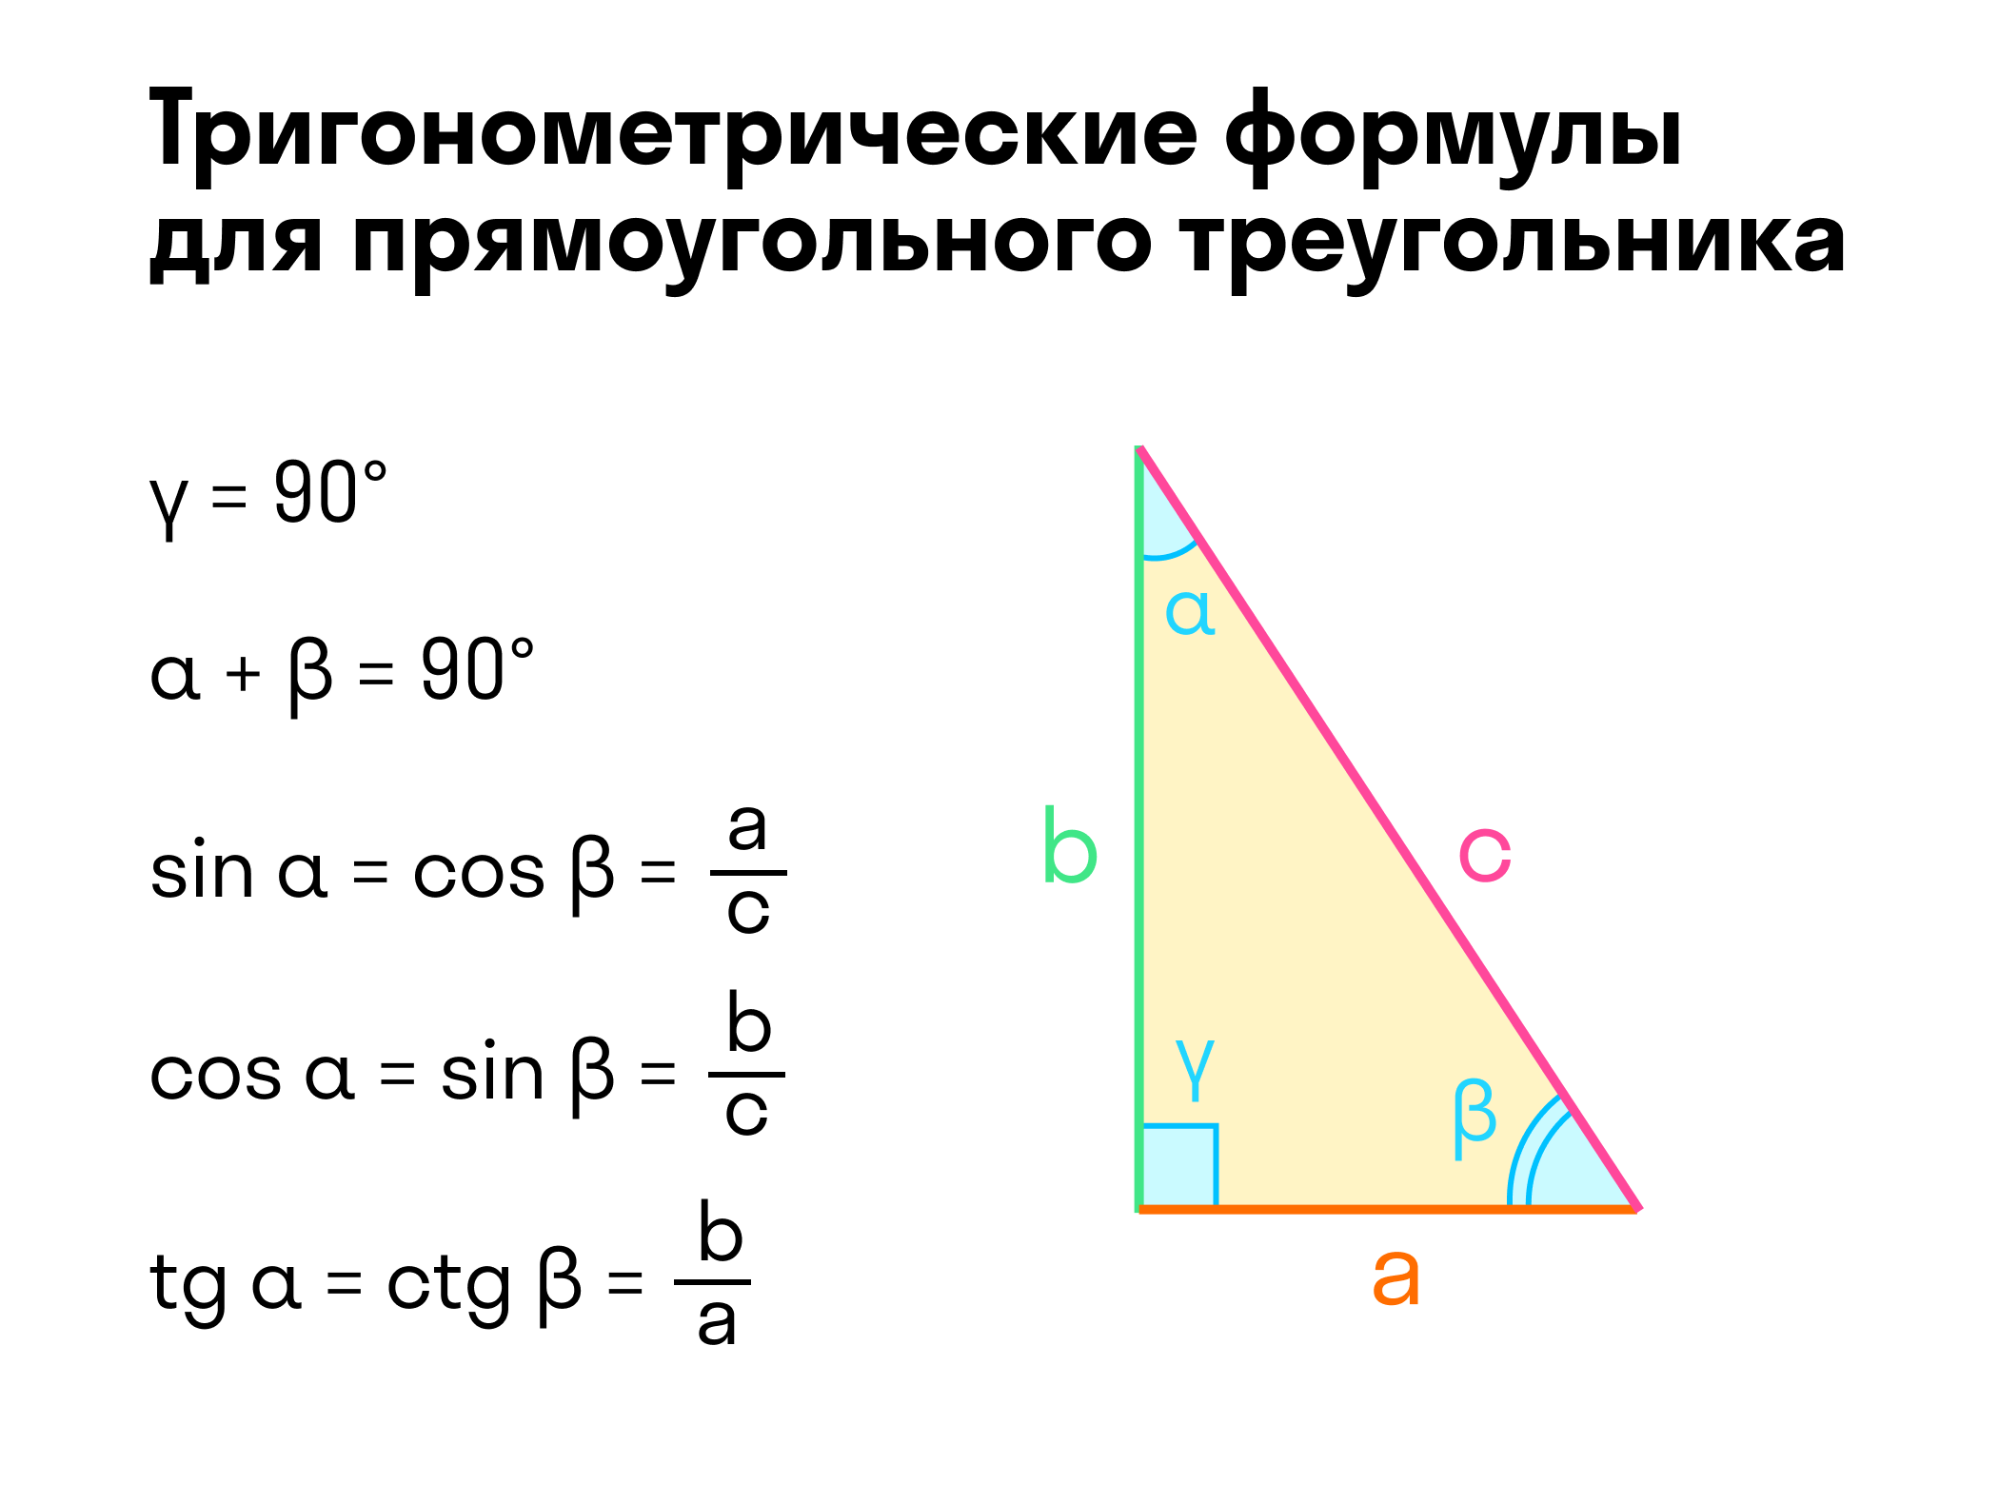 Тригонометрические функции решение треугольников. Тригонометрия в прямоугольном треугольнике формулы. Тригонометрические формулы прямоугольного треугольника. Тригонометрические функции угла прямоугольного треугольника. Формулы тря прямоугольного треугольника.